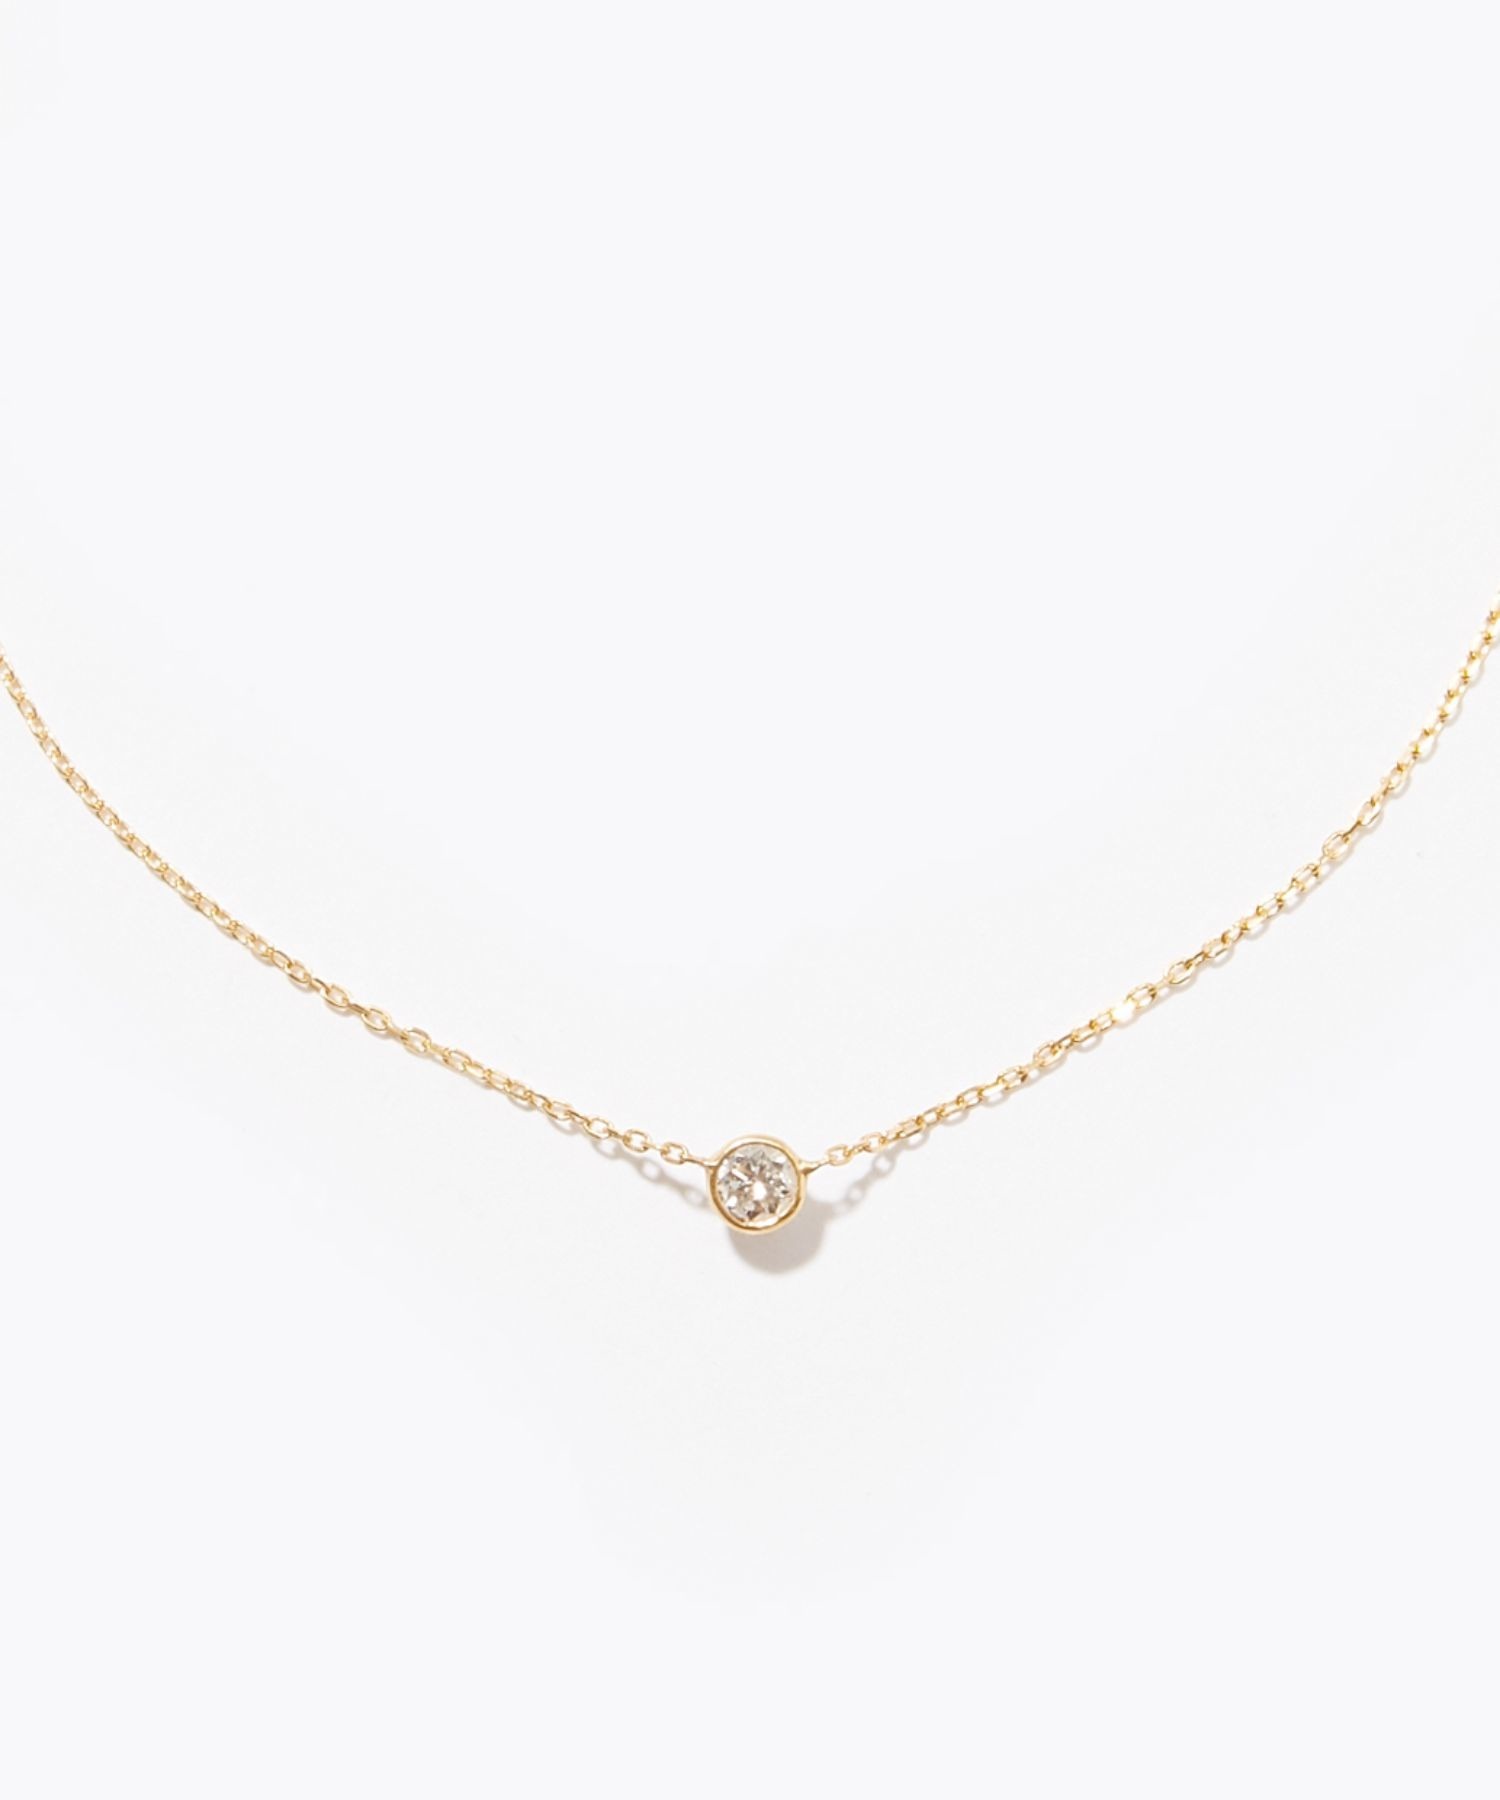 【ete】K18YG ダイヤモンド 0.1ct ネックレス「ブライト」装飾ダイヤモンド